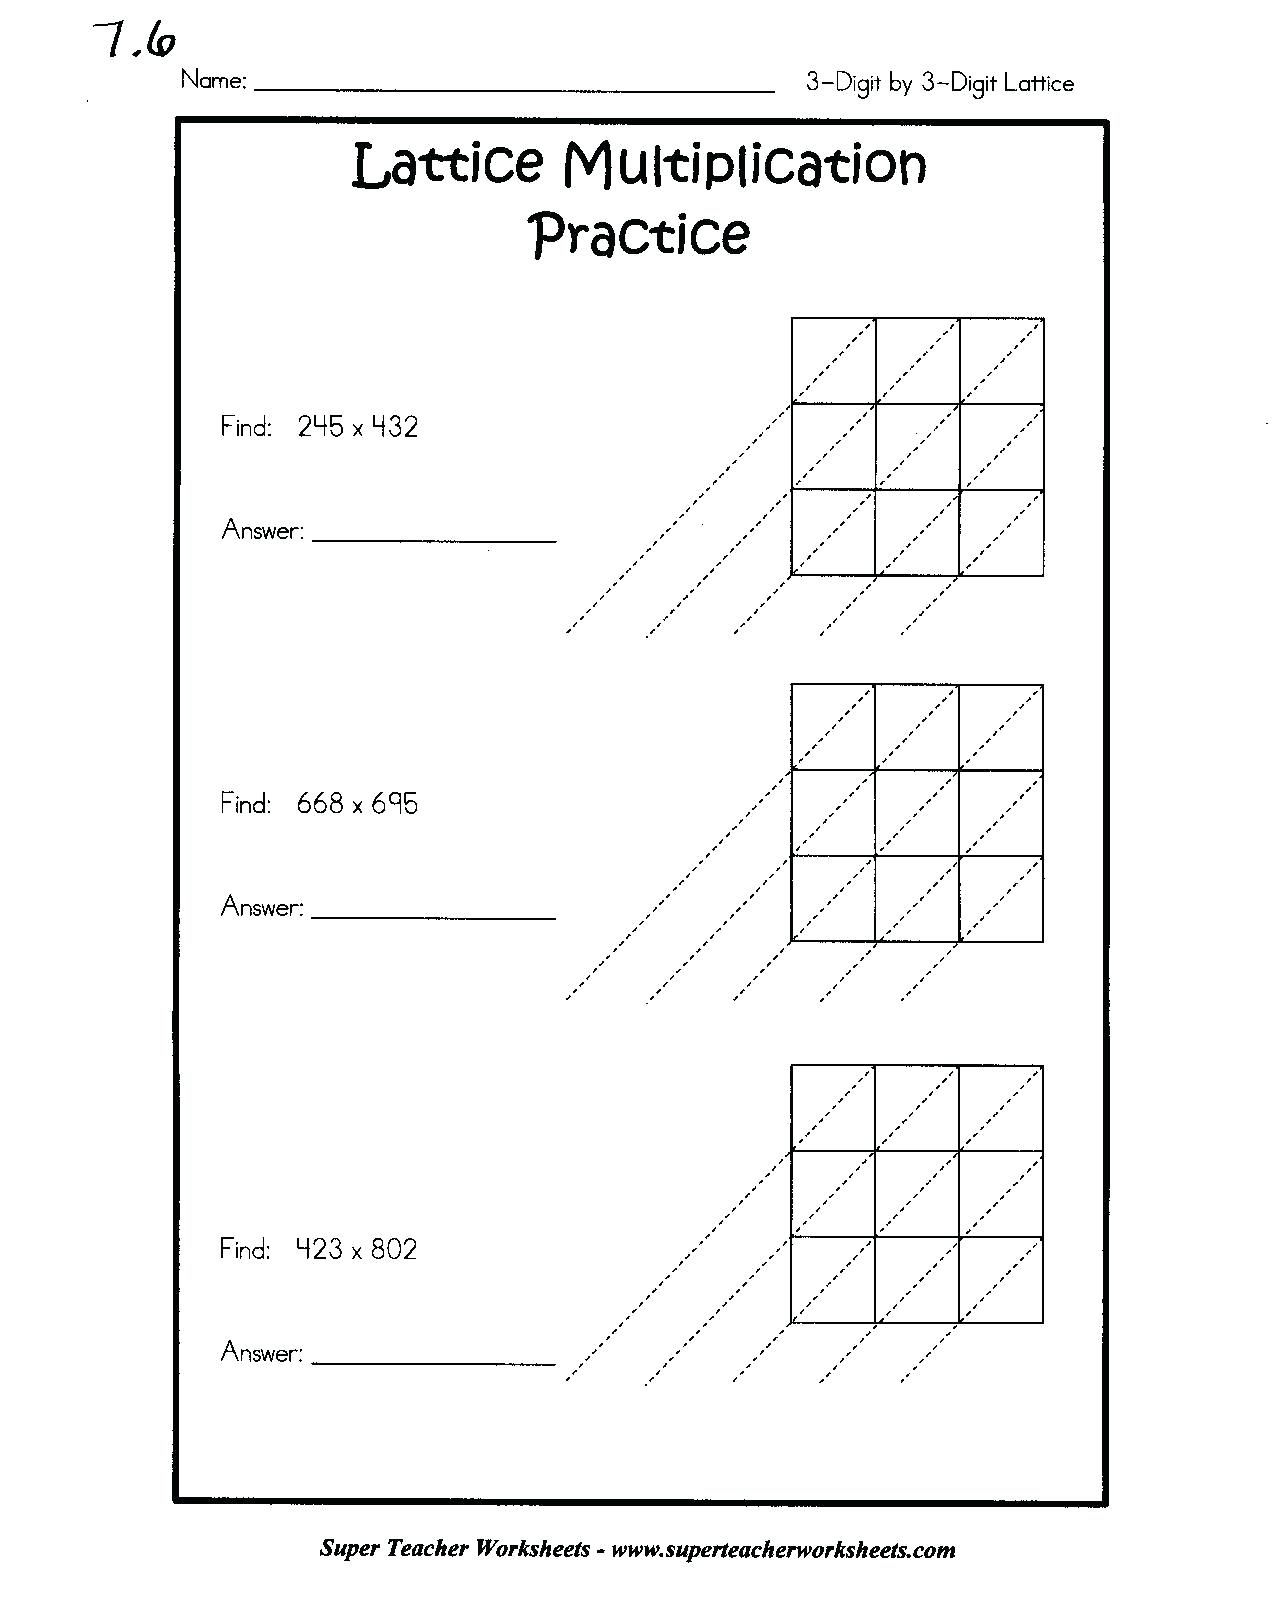 distance-learning-multiplication-strategies-lattice-method-google-slides-lattice-method